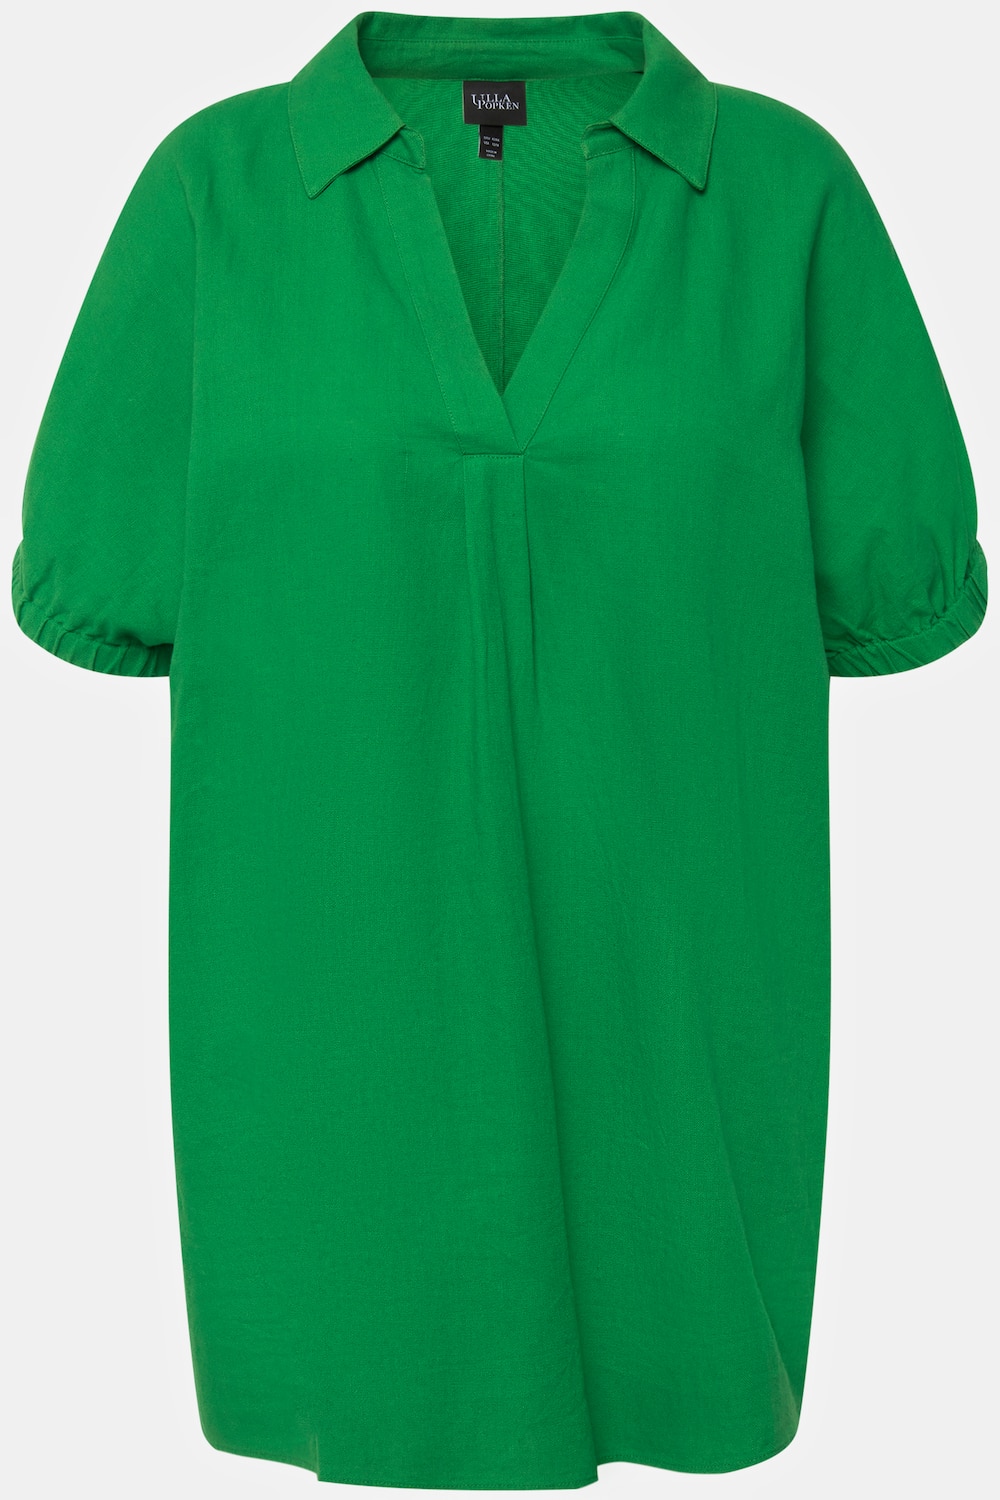 Grote Maten blouse, Dames, groen, Maat: 58/60, Linnen/Viscose, Ulla Popken